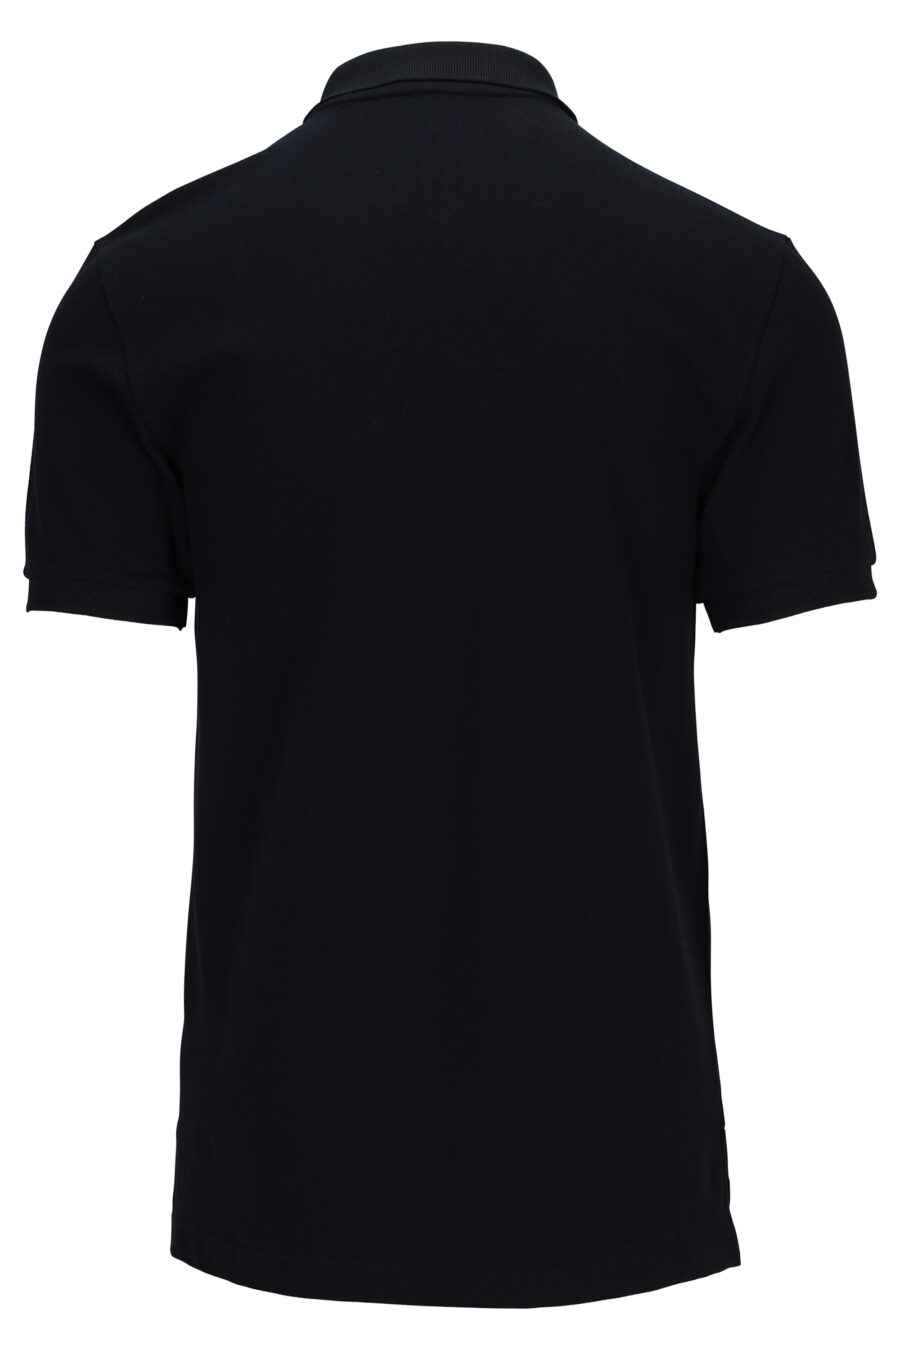 Schwarzes Poloshirt mit Bärchen-Mini-Logo - 889316660906 1